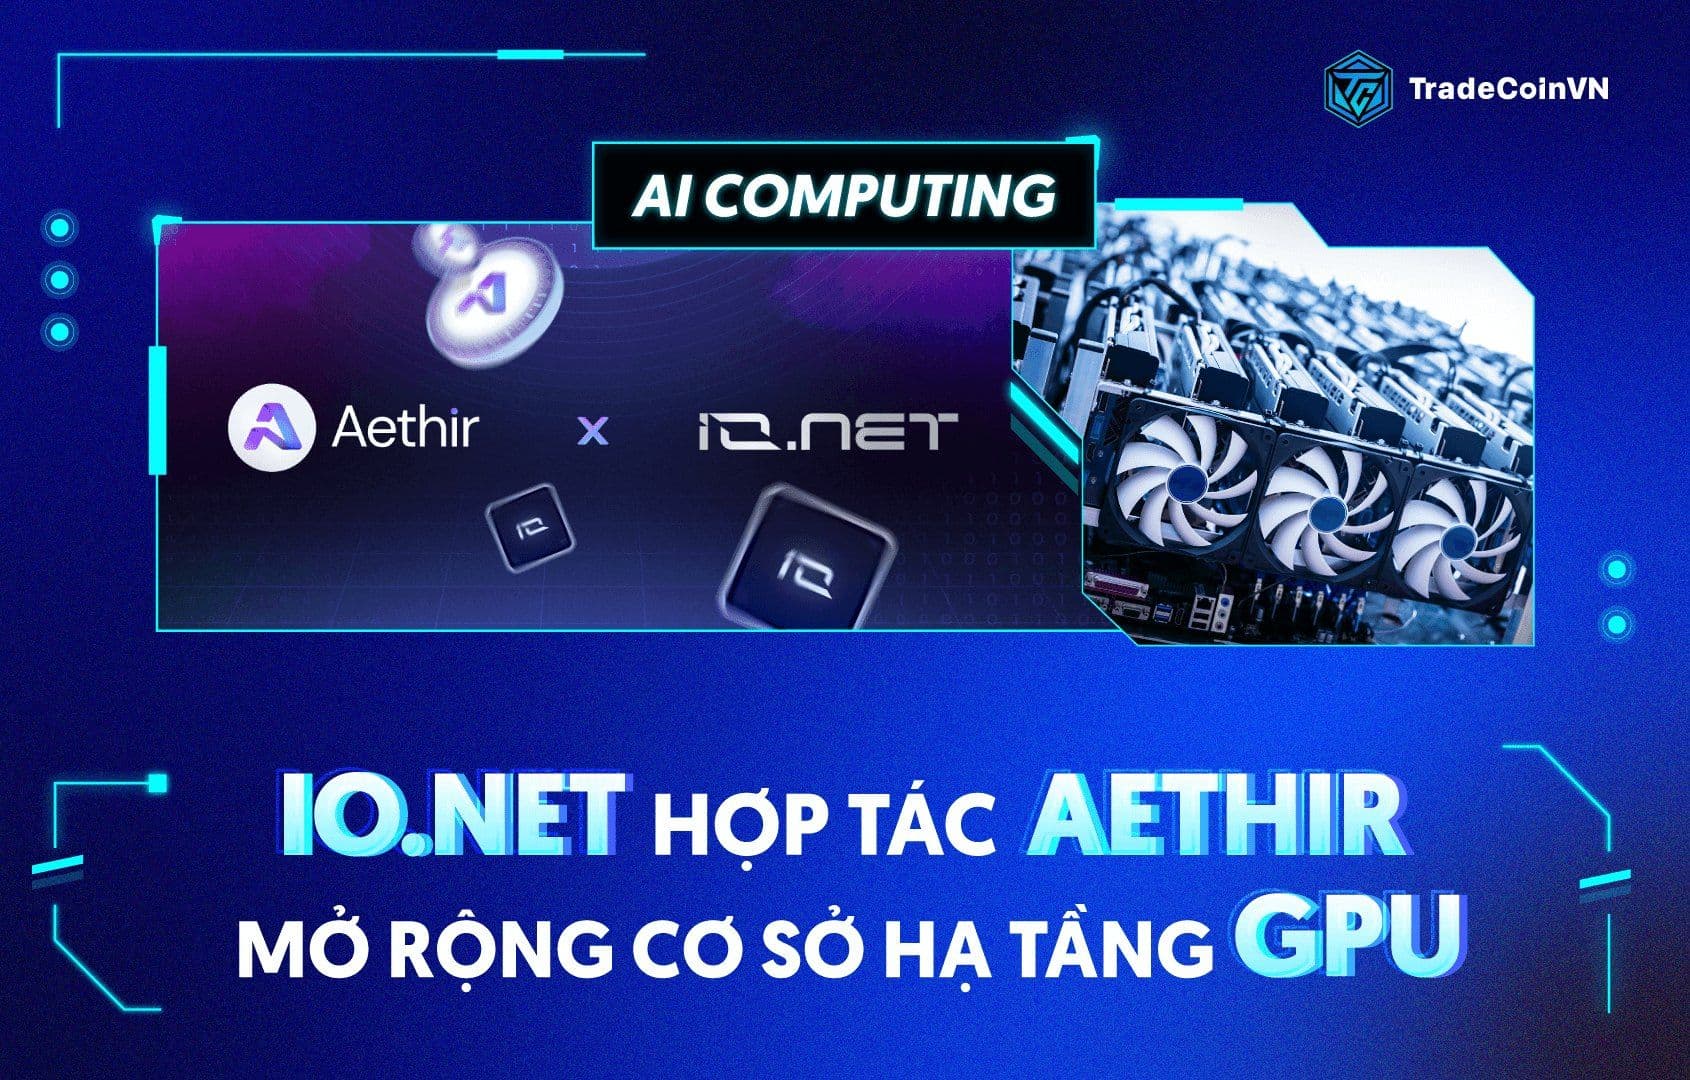 Io.net hợp tác Aethir mở rộng cơ sở hạ tầng GPU để thúc đẩy AI Computing